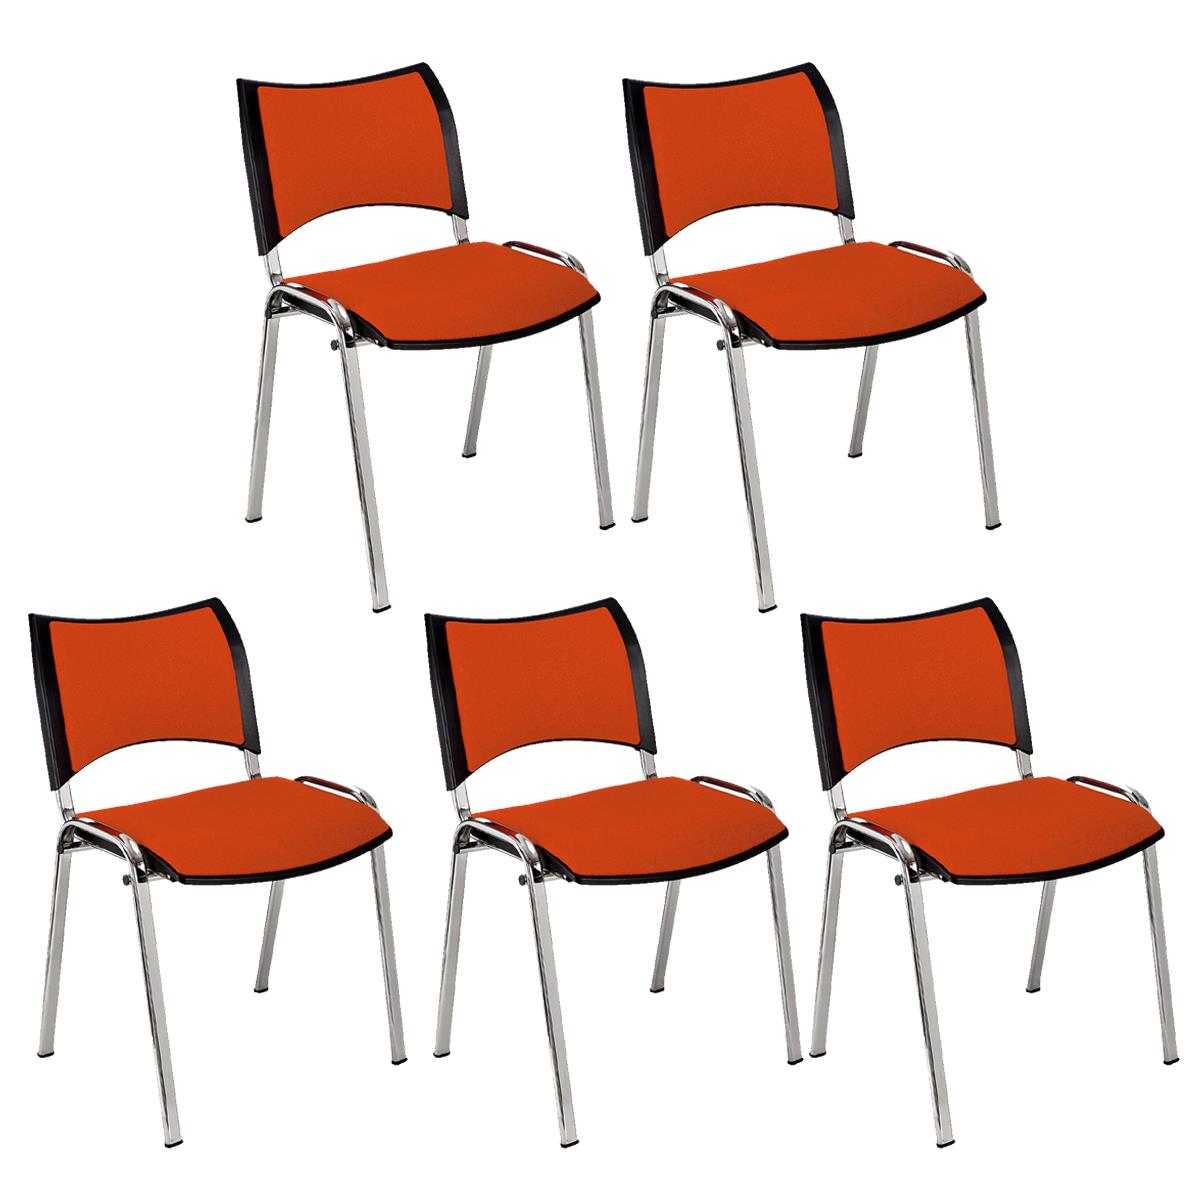 Lote 5 Cadeiras de Visita ROMEL, Prática e Empilhável, Pernas Cromadas, Em Pano, Laranja